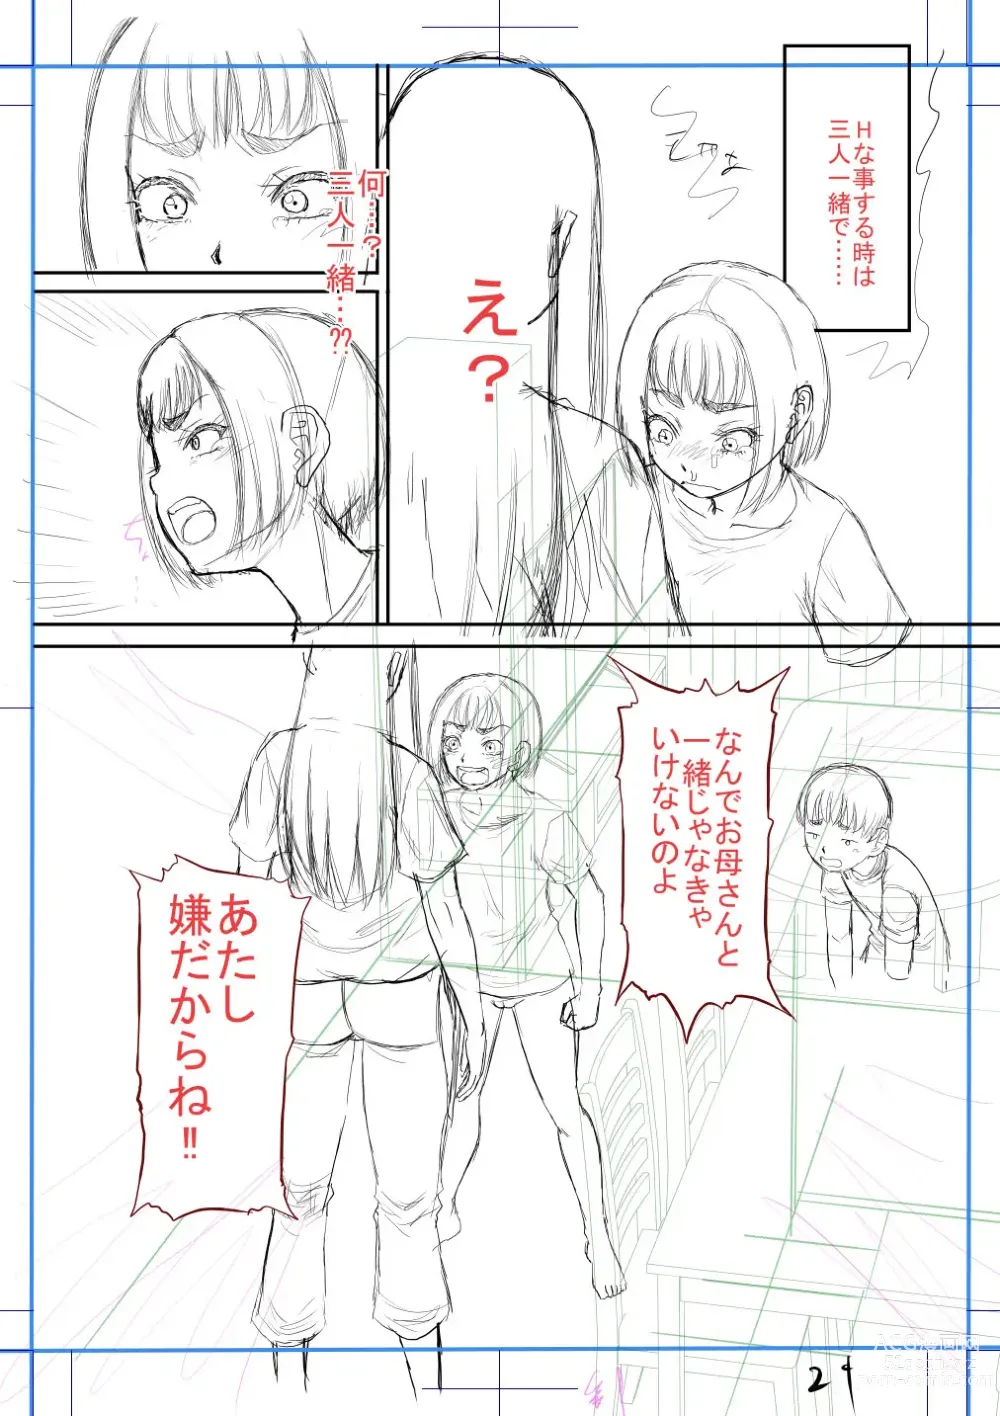 Page 233 of manga Boku no Kanojo ga...